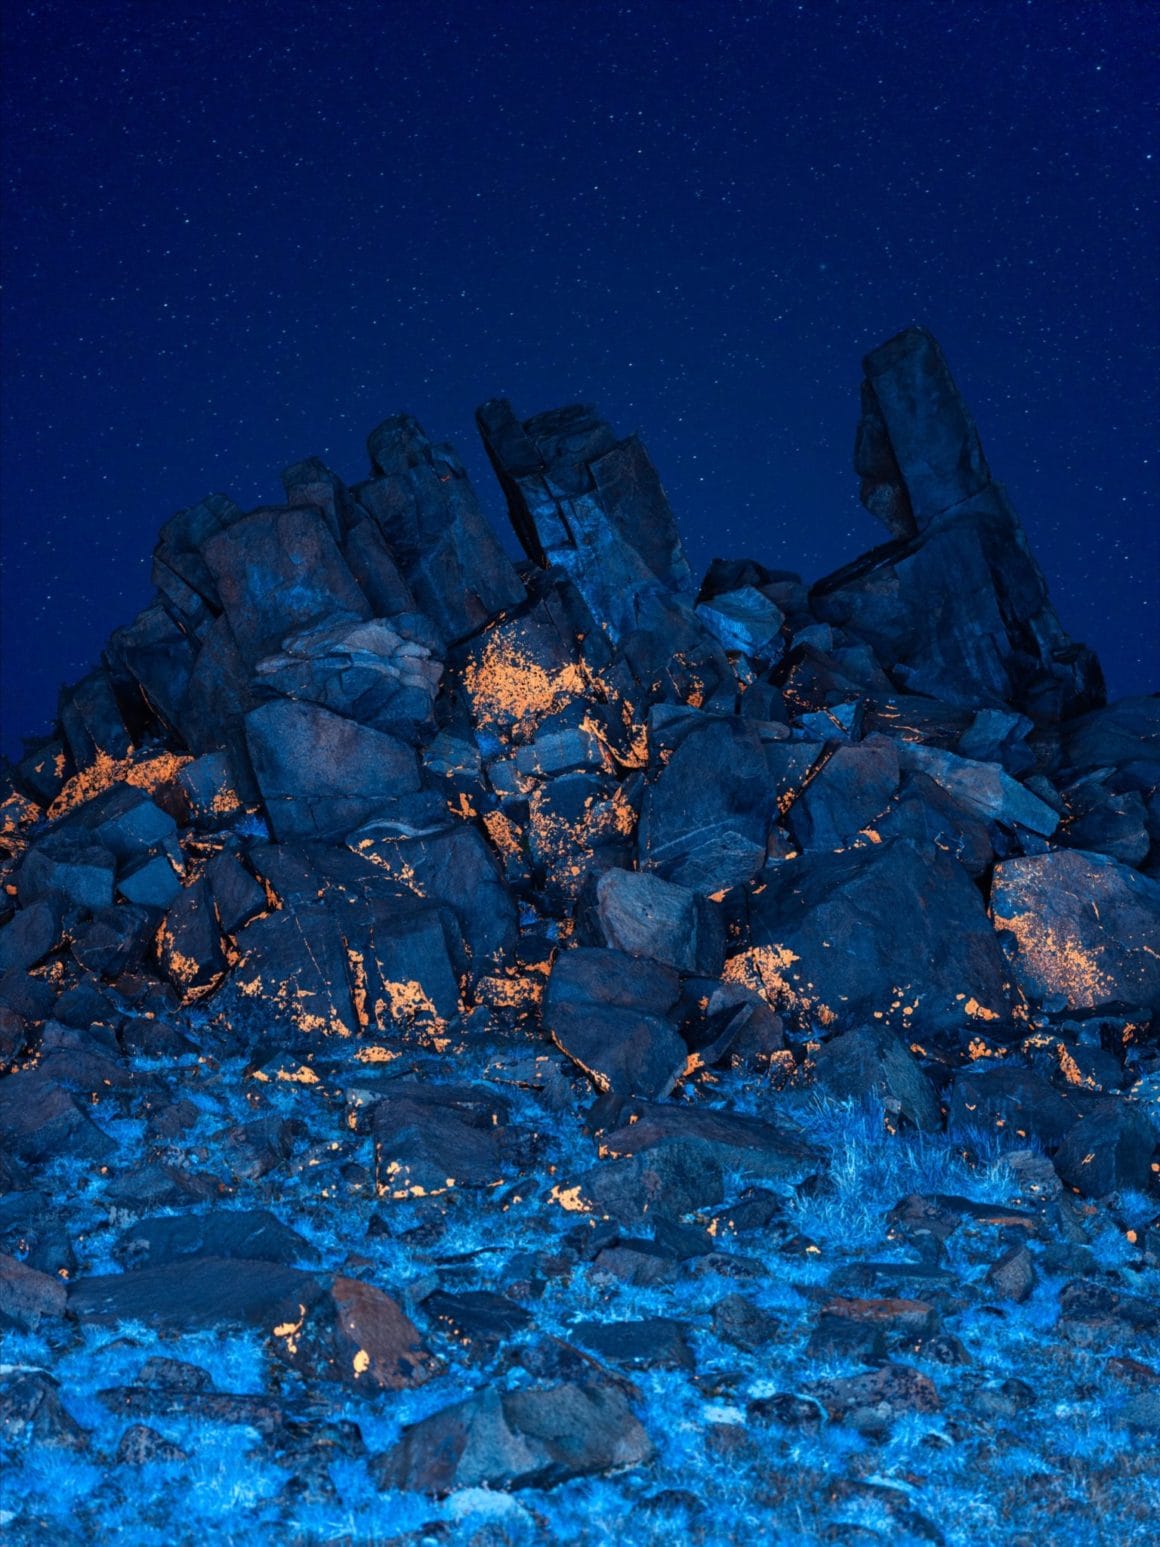 Ces rochers se retrouvent couverts d'une matière orange et les plantes en dessous sont bleues.